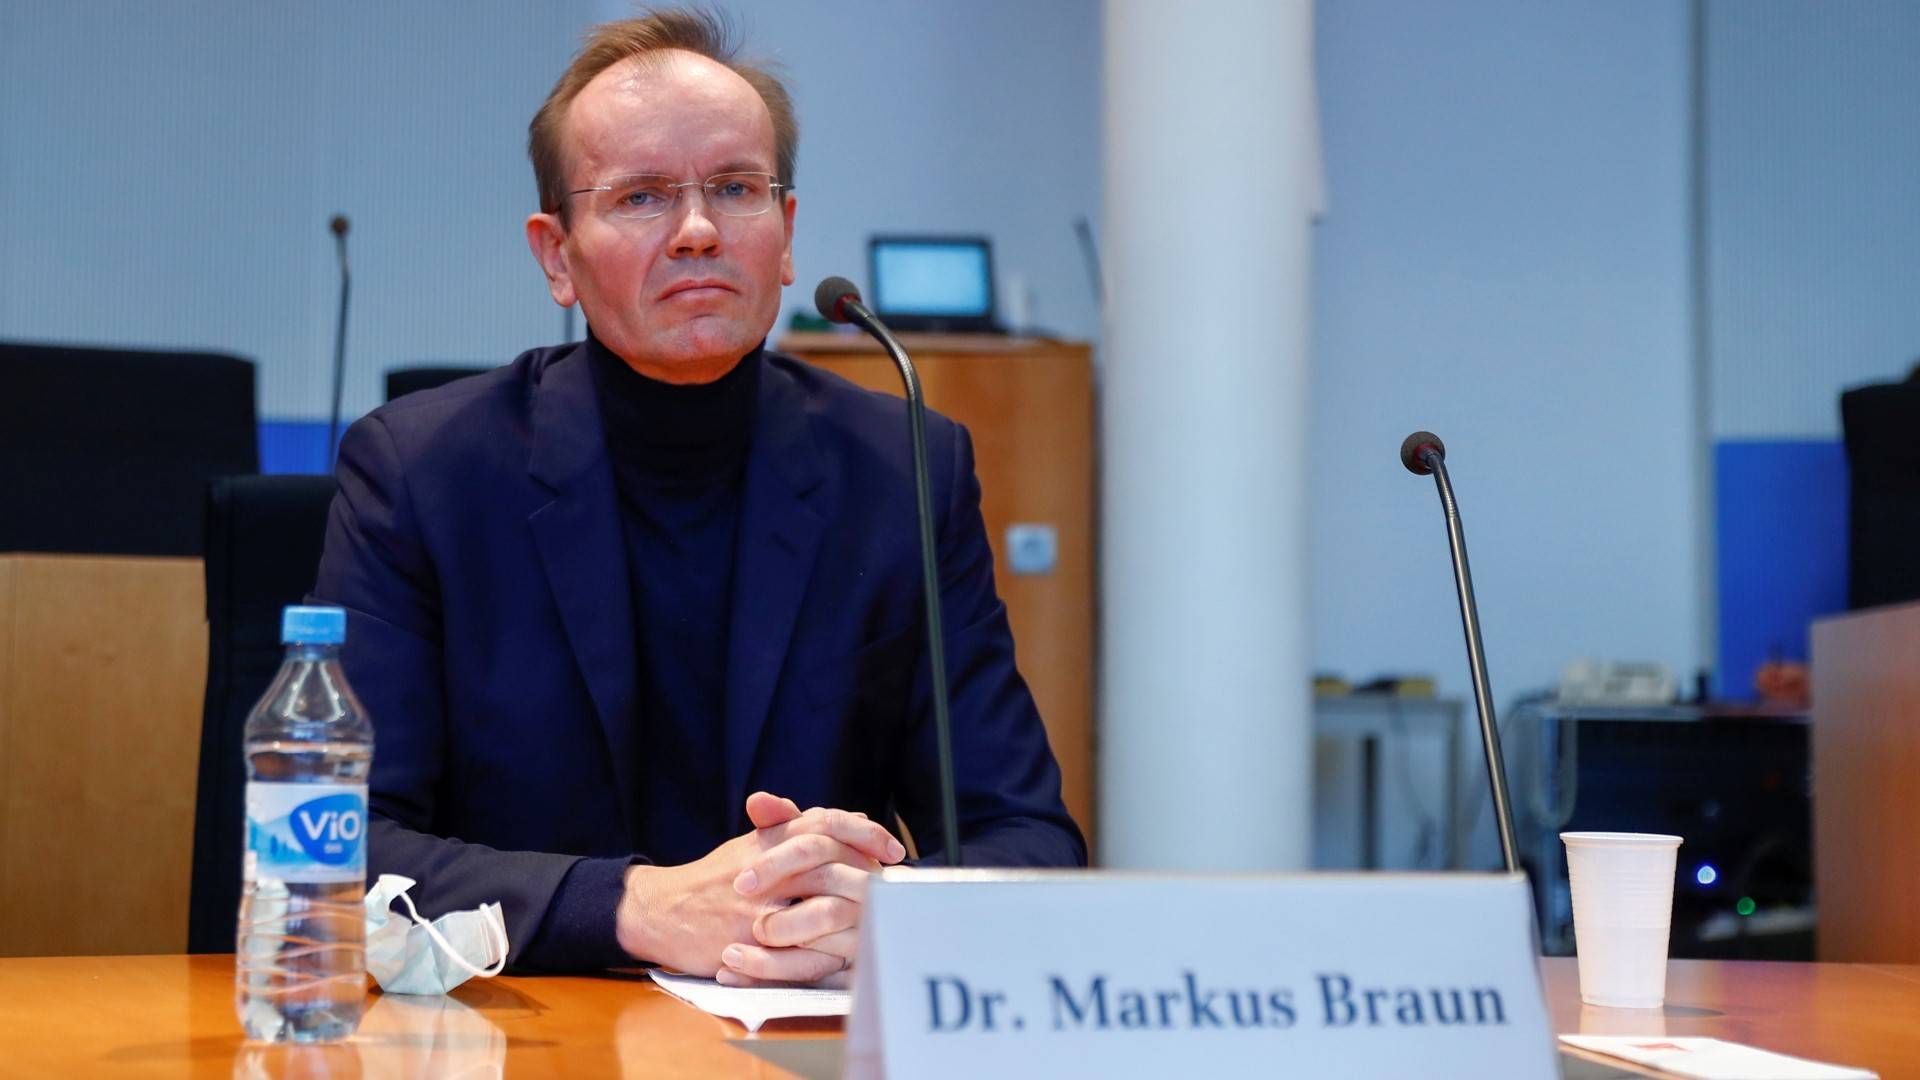 Markus Braun bei seiner Aussage vor dem Untersuchungsausschuss des Bundestages. | Foto: picture alliance/Fabrizio Bensch/Reuters Images Europe/Pool/dpa